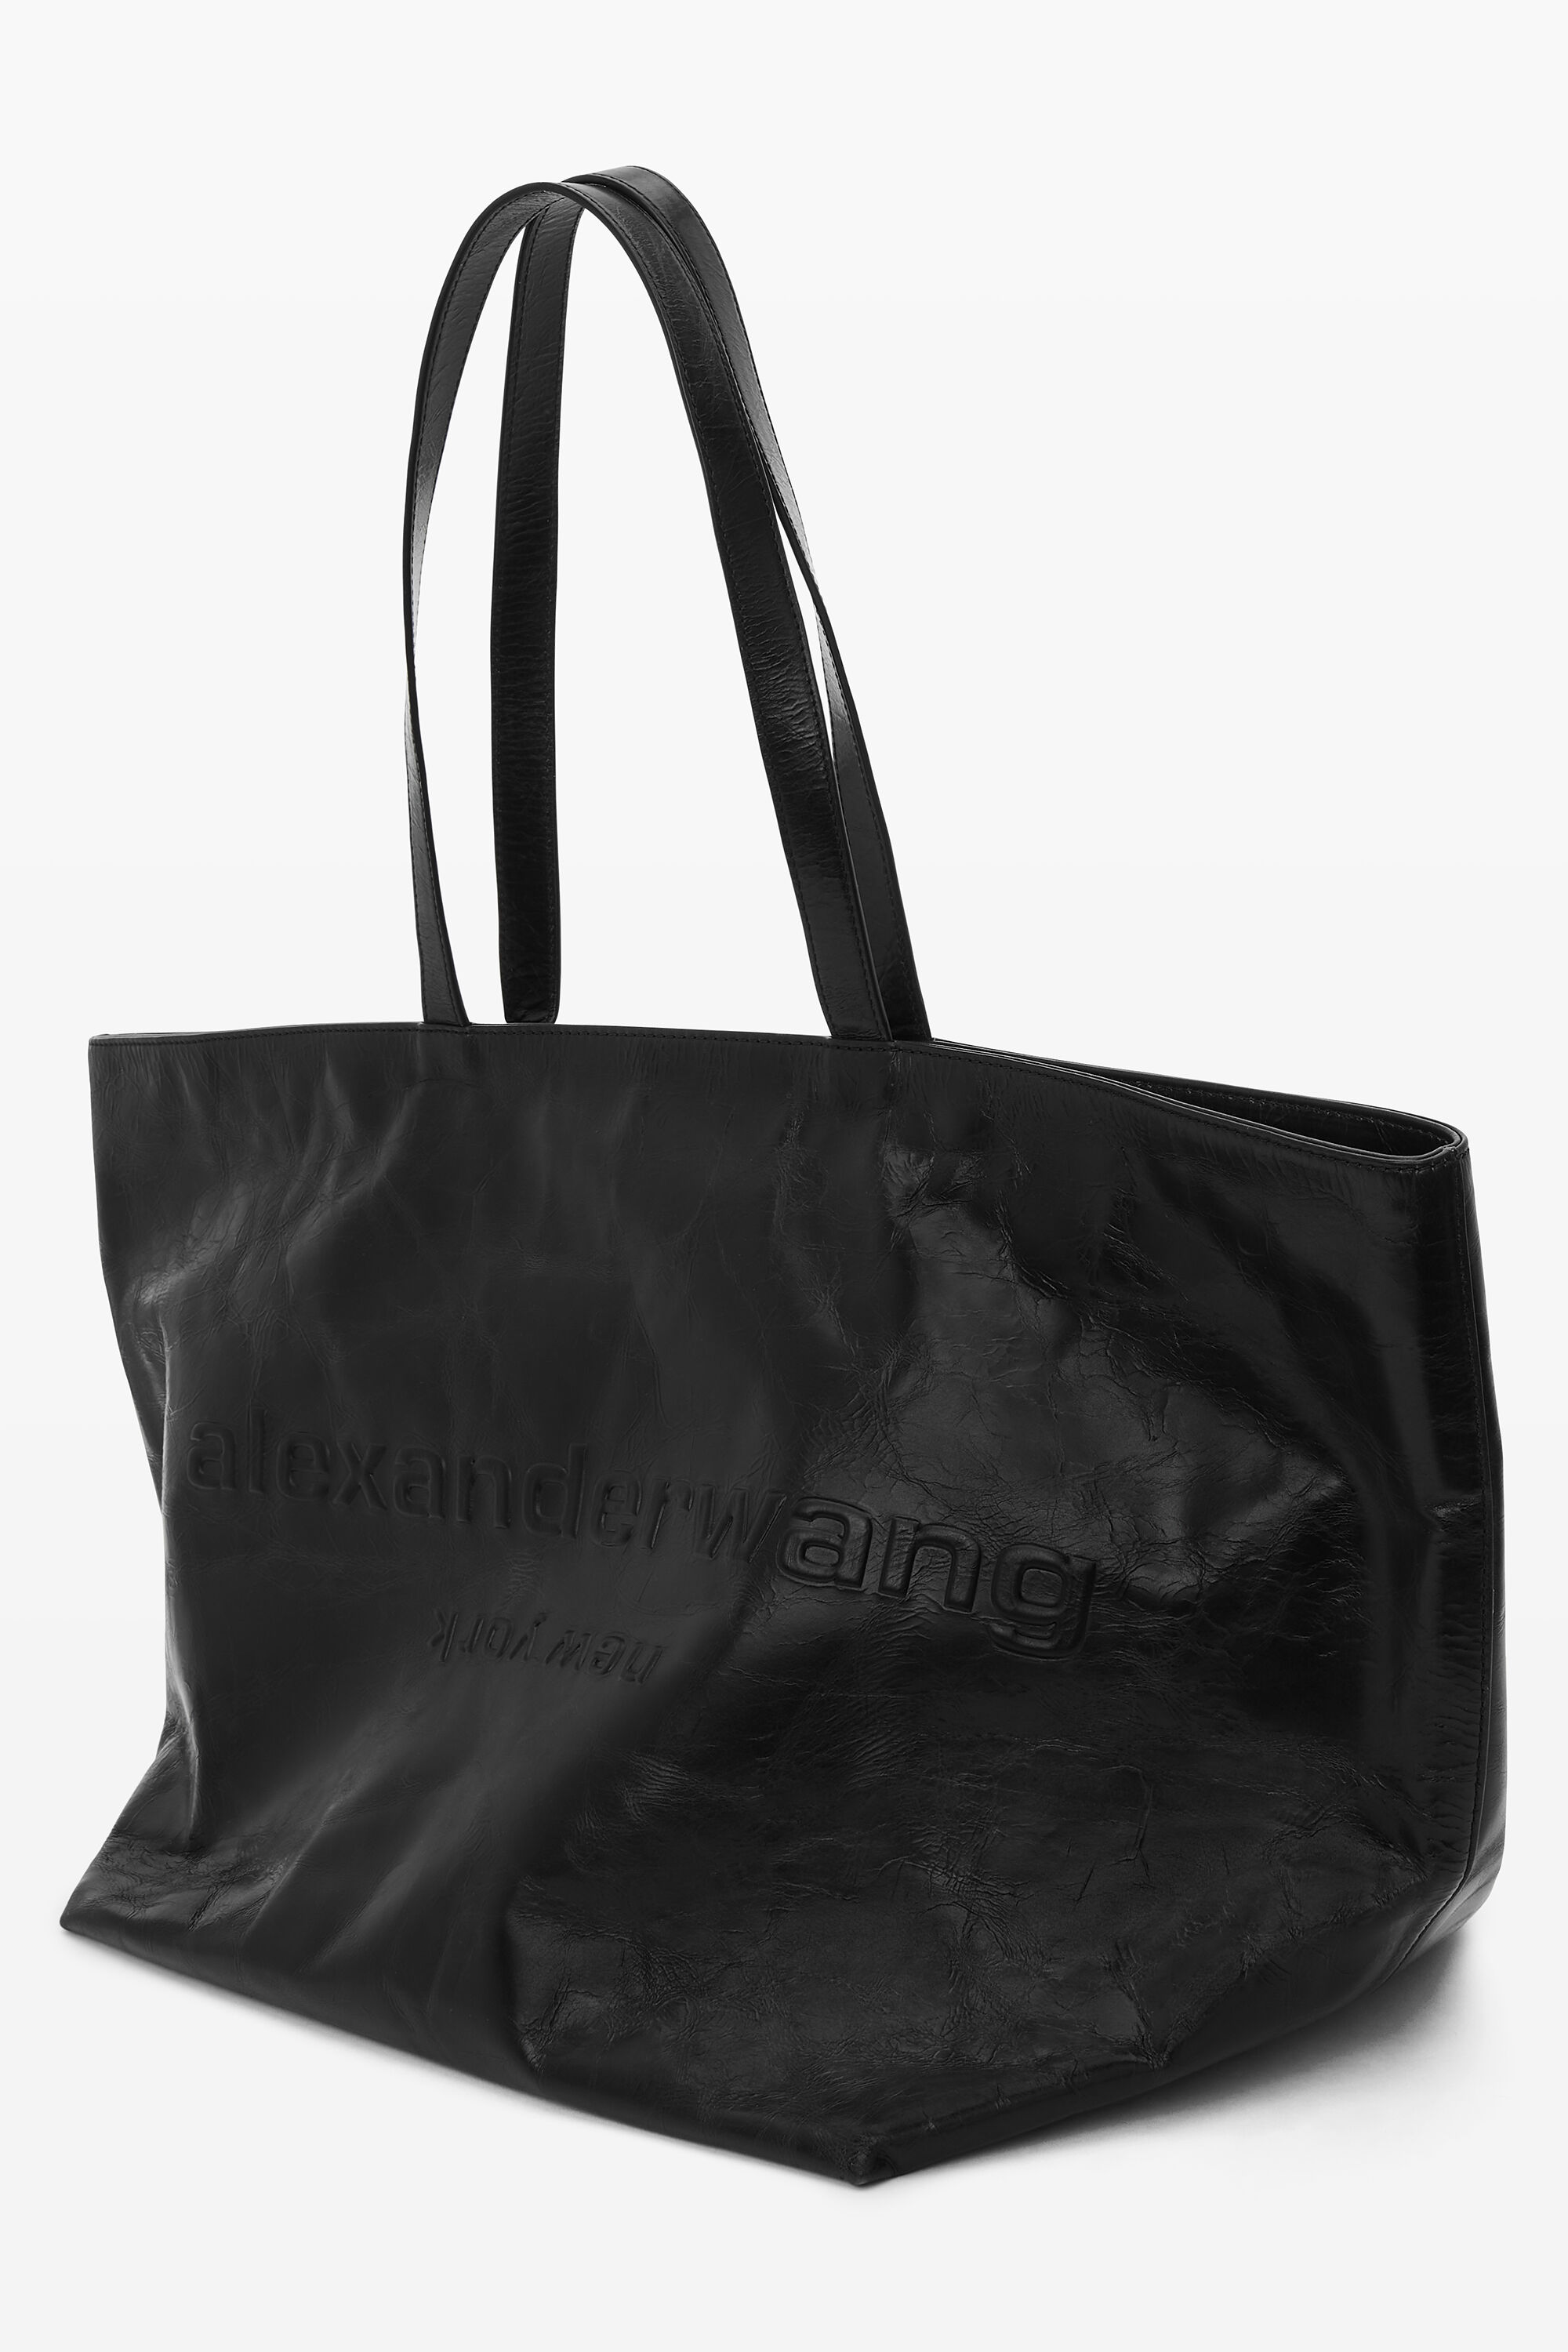 alexanderwang Punch Leather Tote Bag BLACK - Alexander Wang